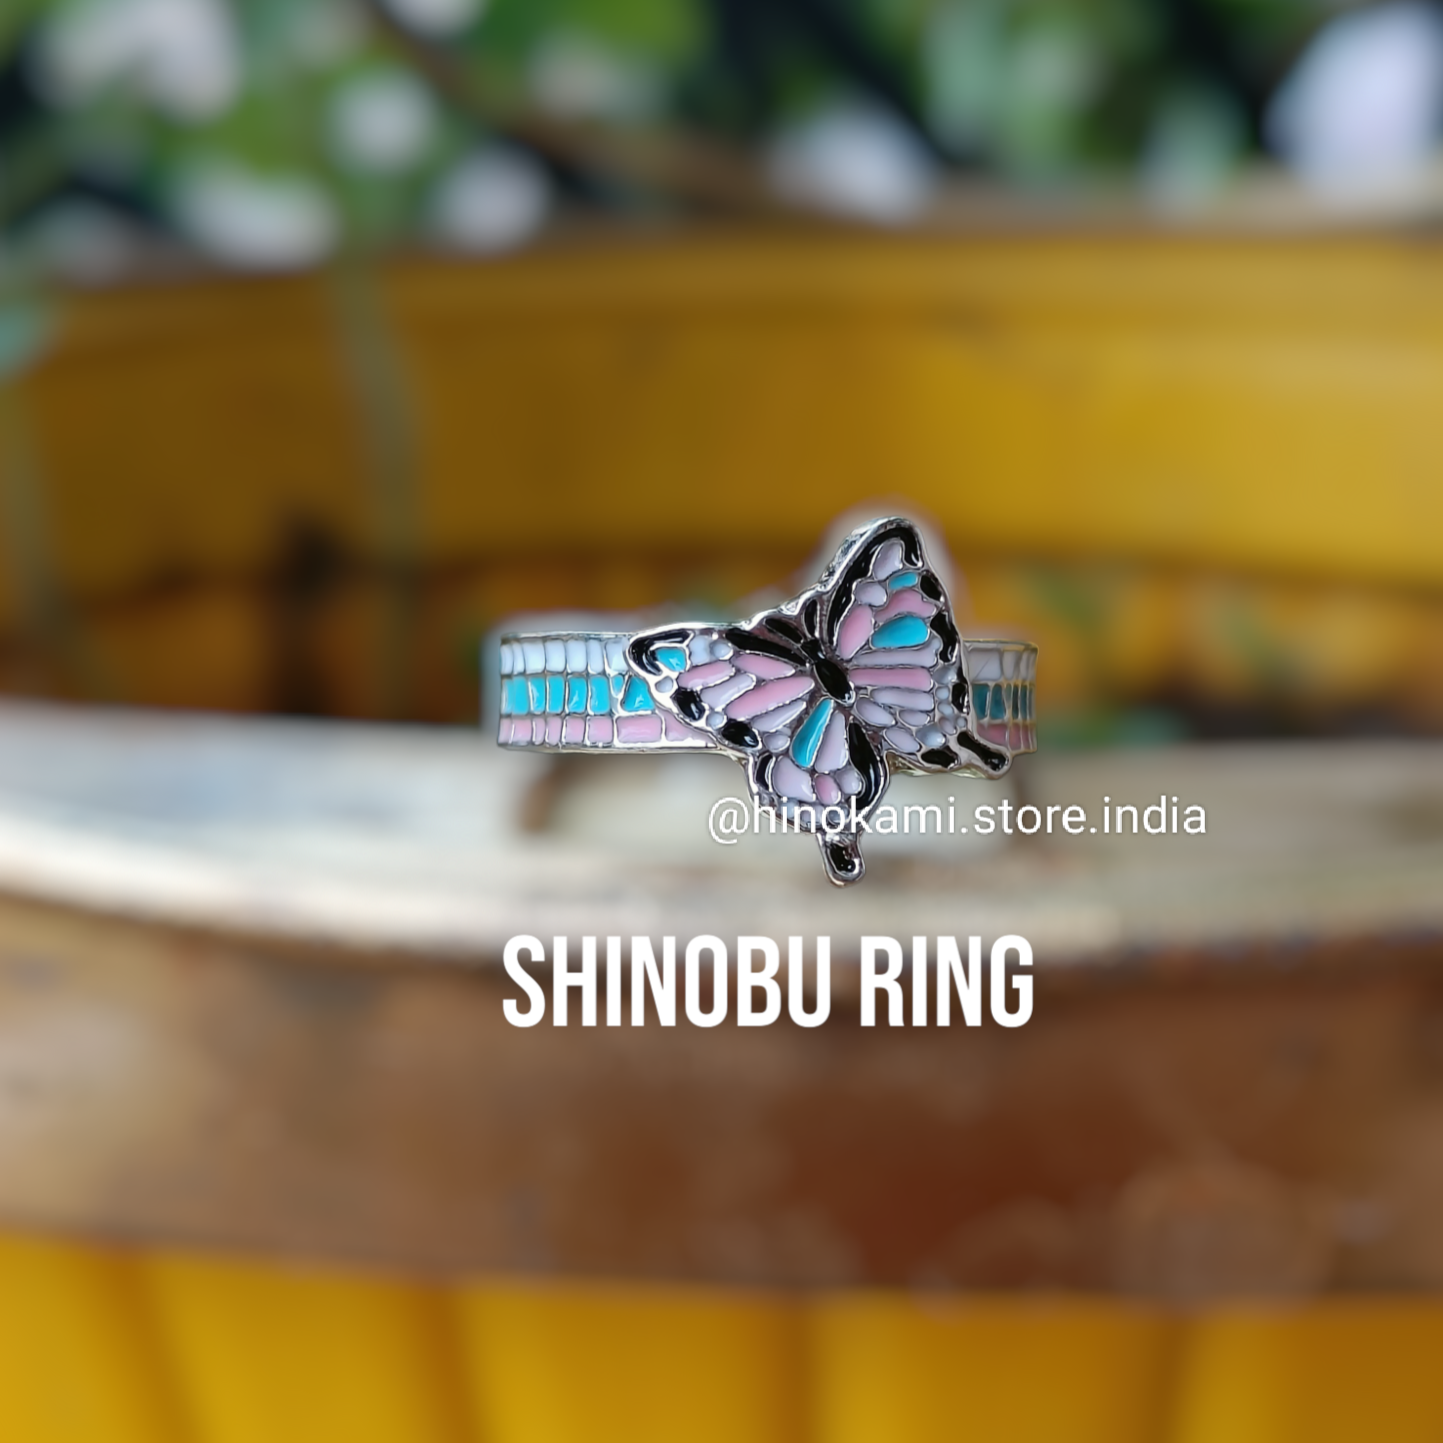 Shinobu ring - demon slayer